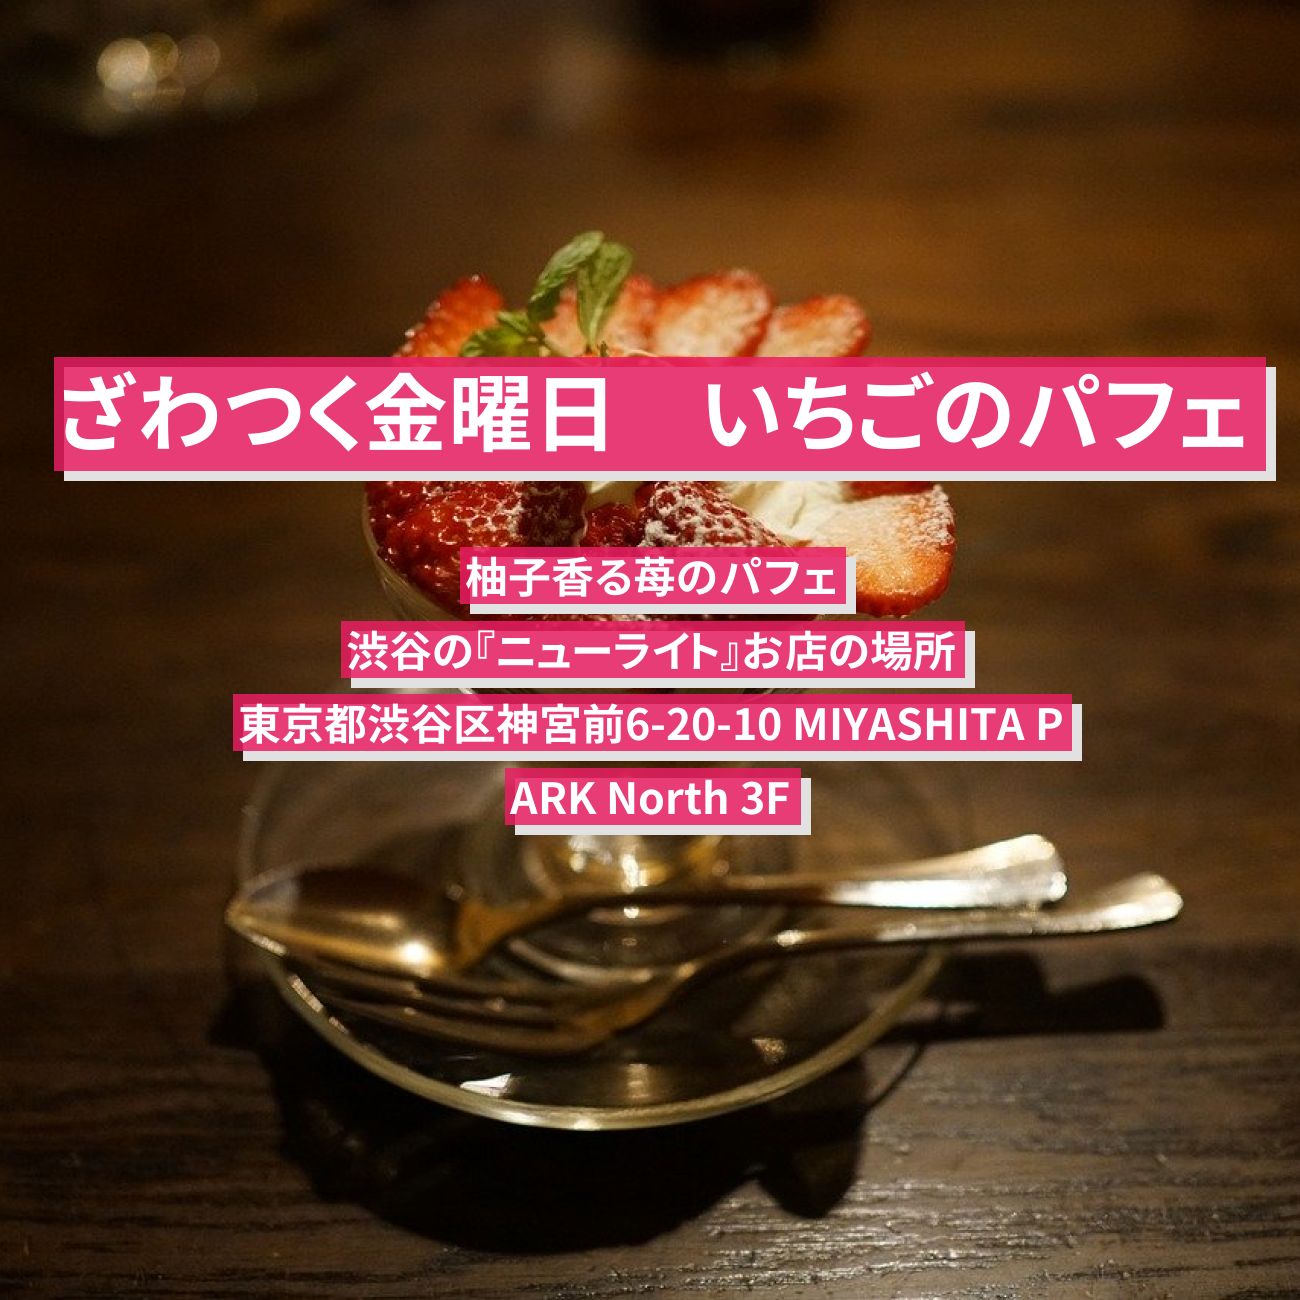 【ざわつく金曜日】いちごパフェ『ニューライト（柚子香る苺のパフェ）』渋谷のお店の場所